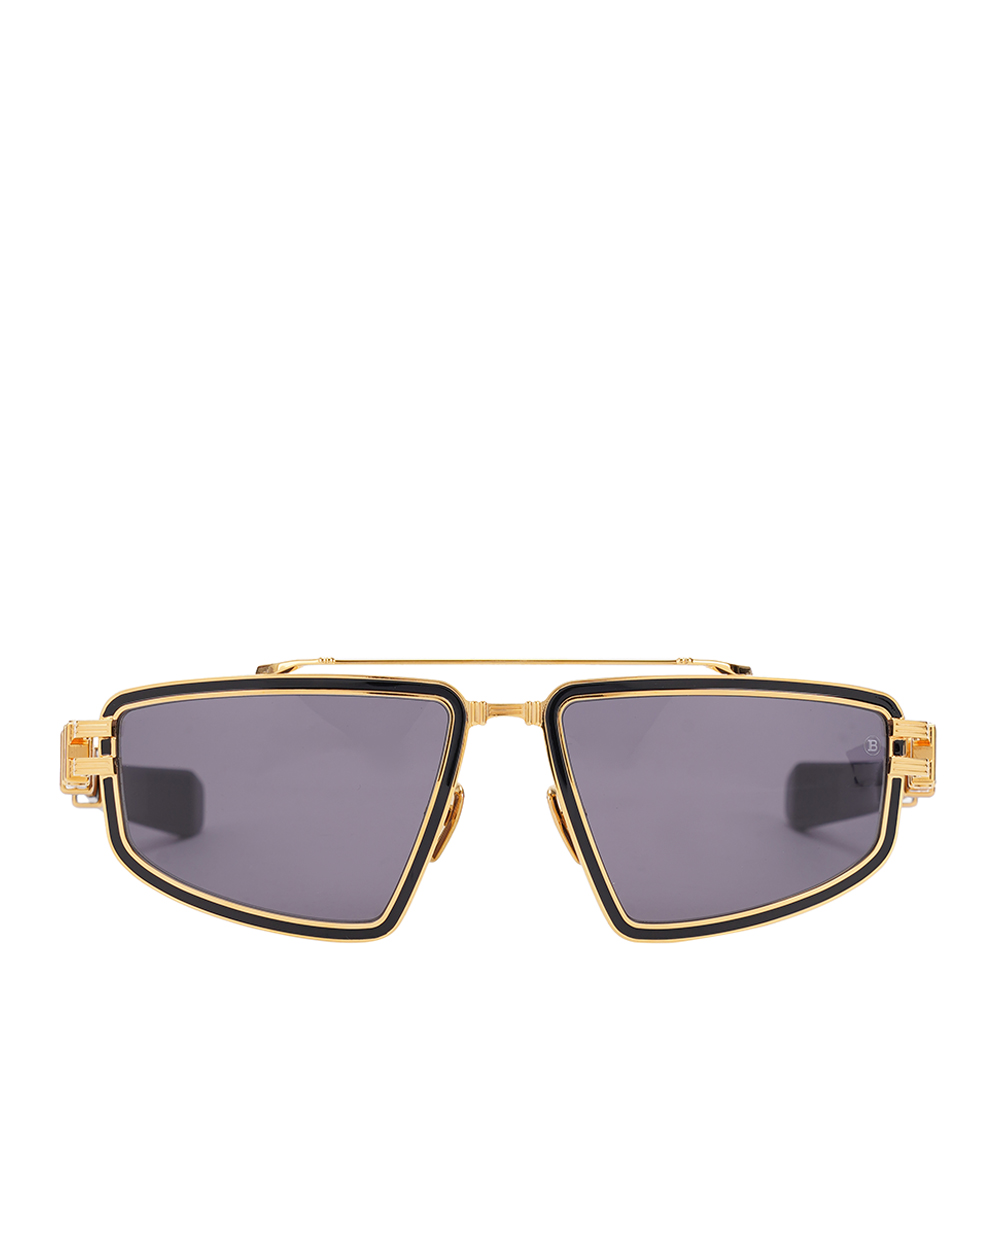 Солнцезащитные очки Titan Balmain BPS-139A-59, черный цвет • Купить в интернет-магазине Kameron